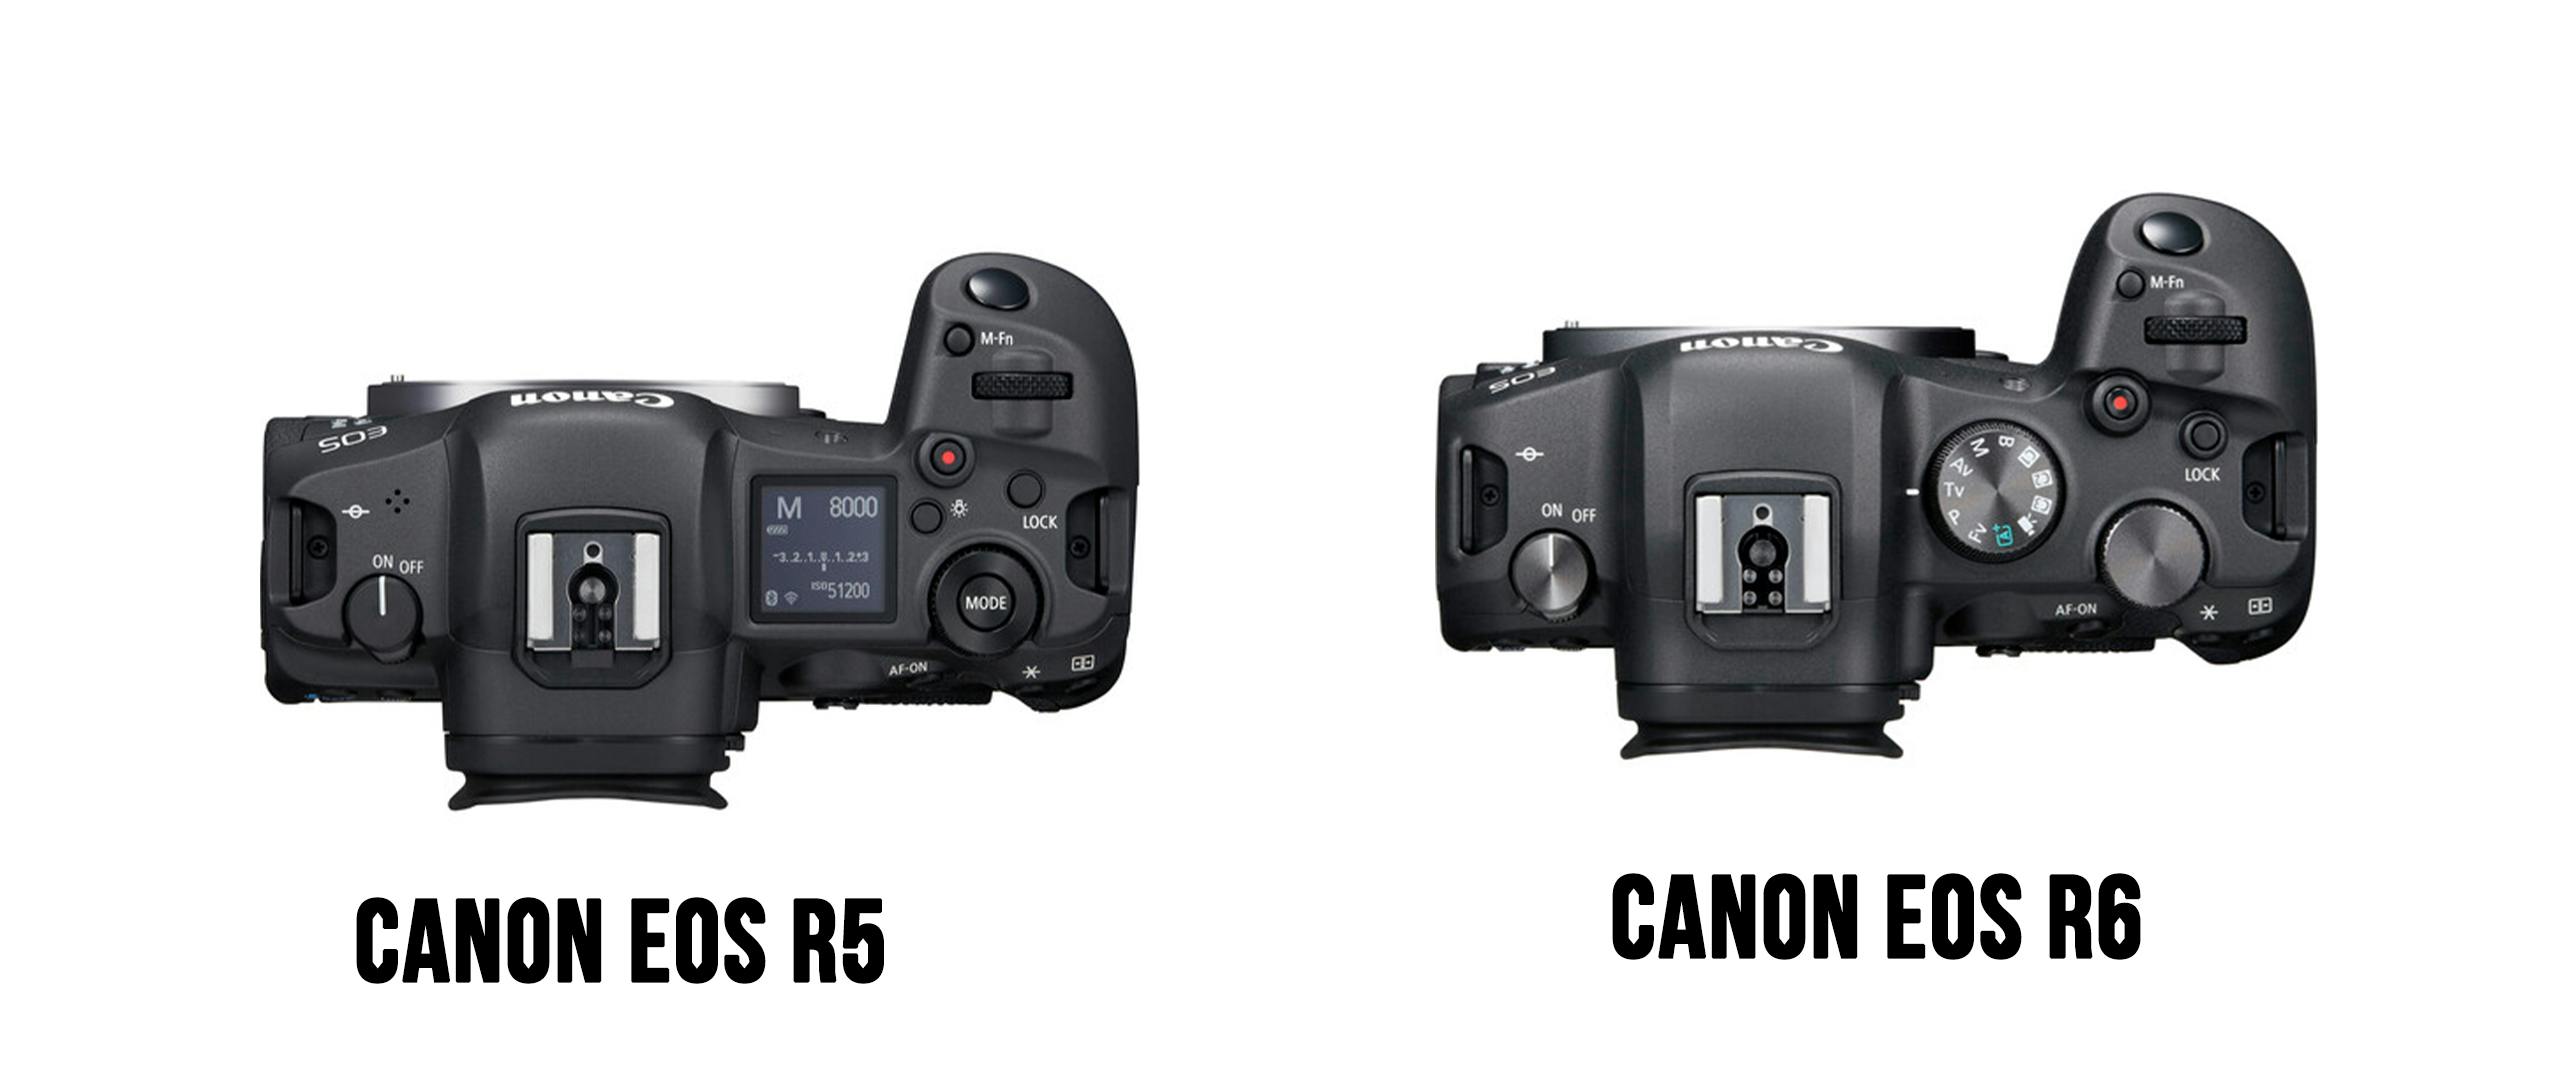 Canon eos r6 vs r5